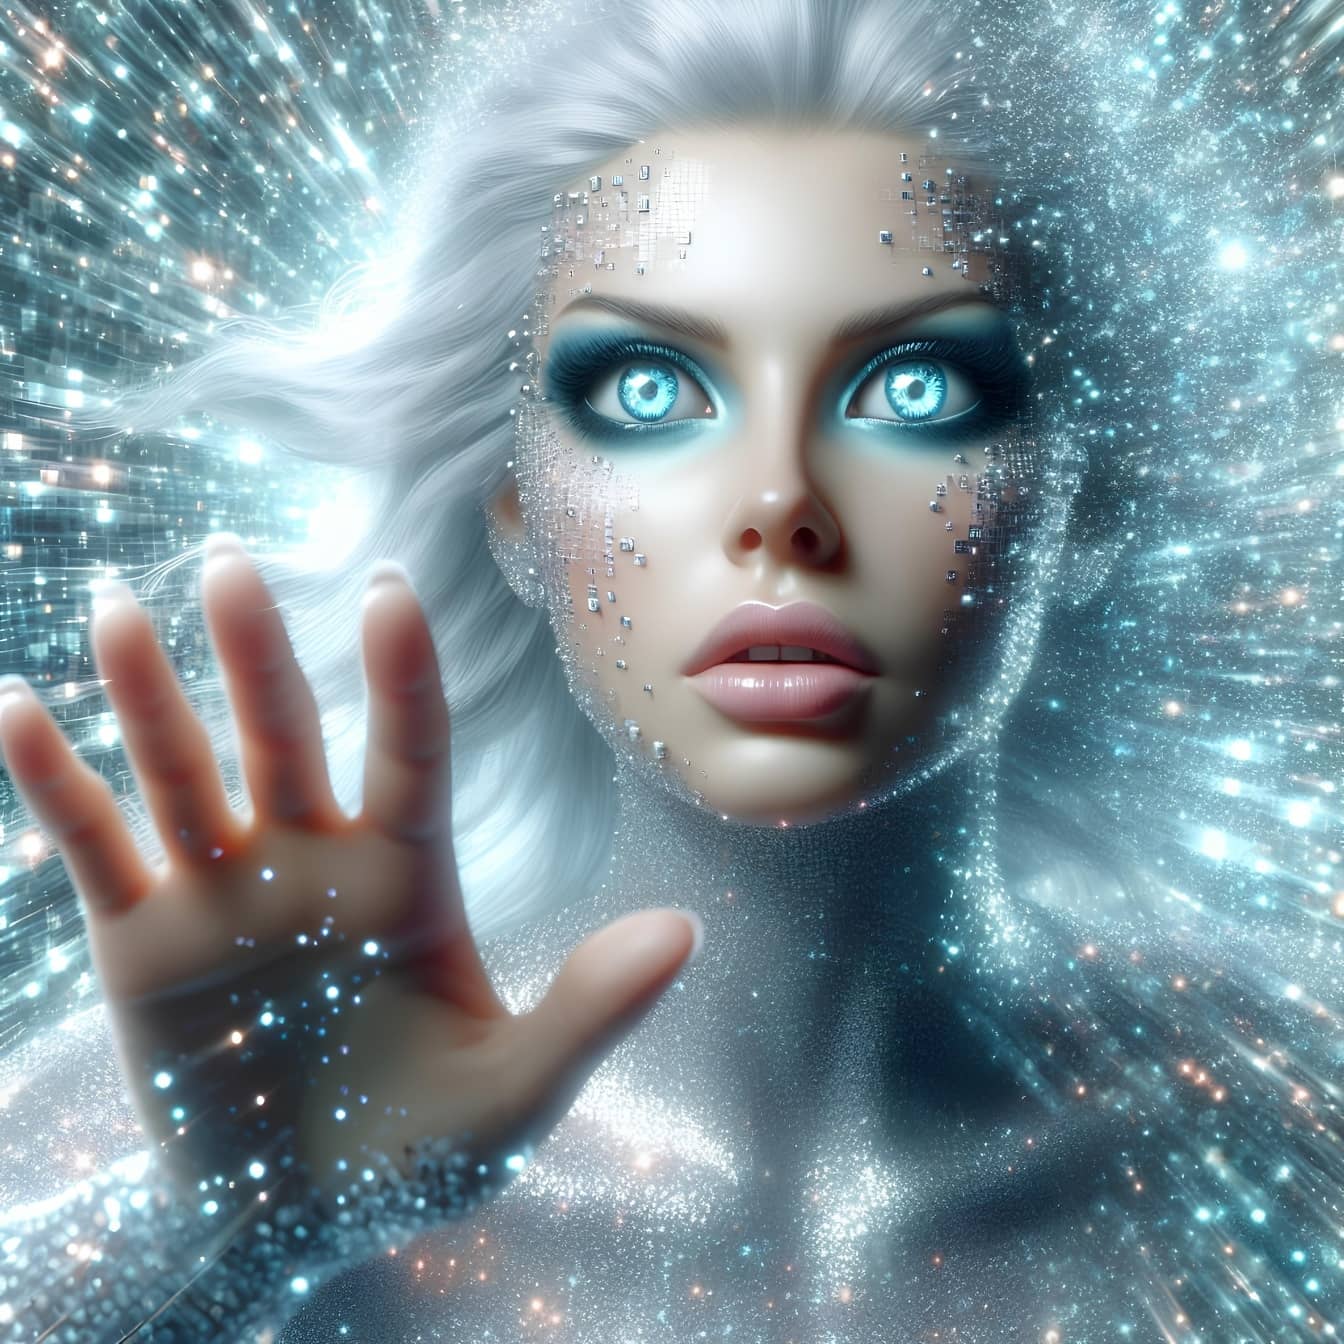 La donna-cyborg umanoide utilizza la tecnica dell’ipnosi quantistica per trasferire l’energia astrale